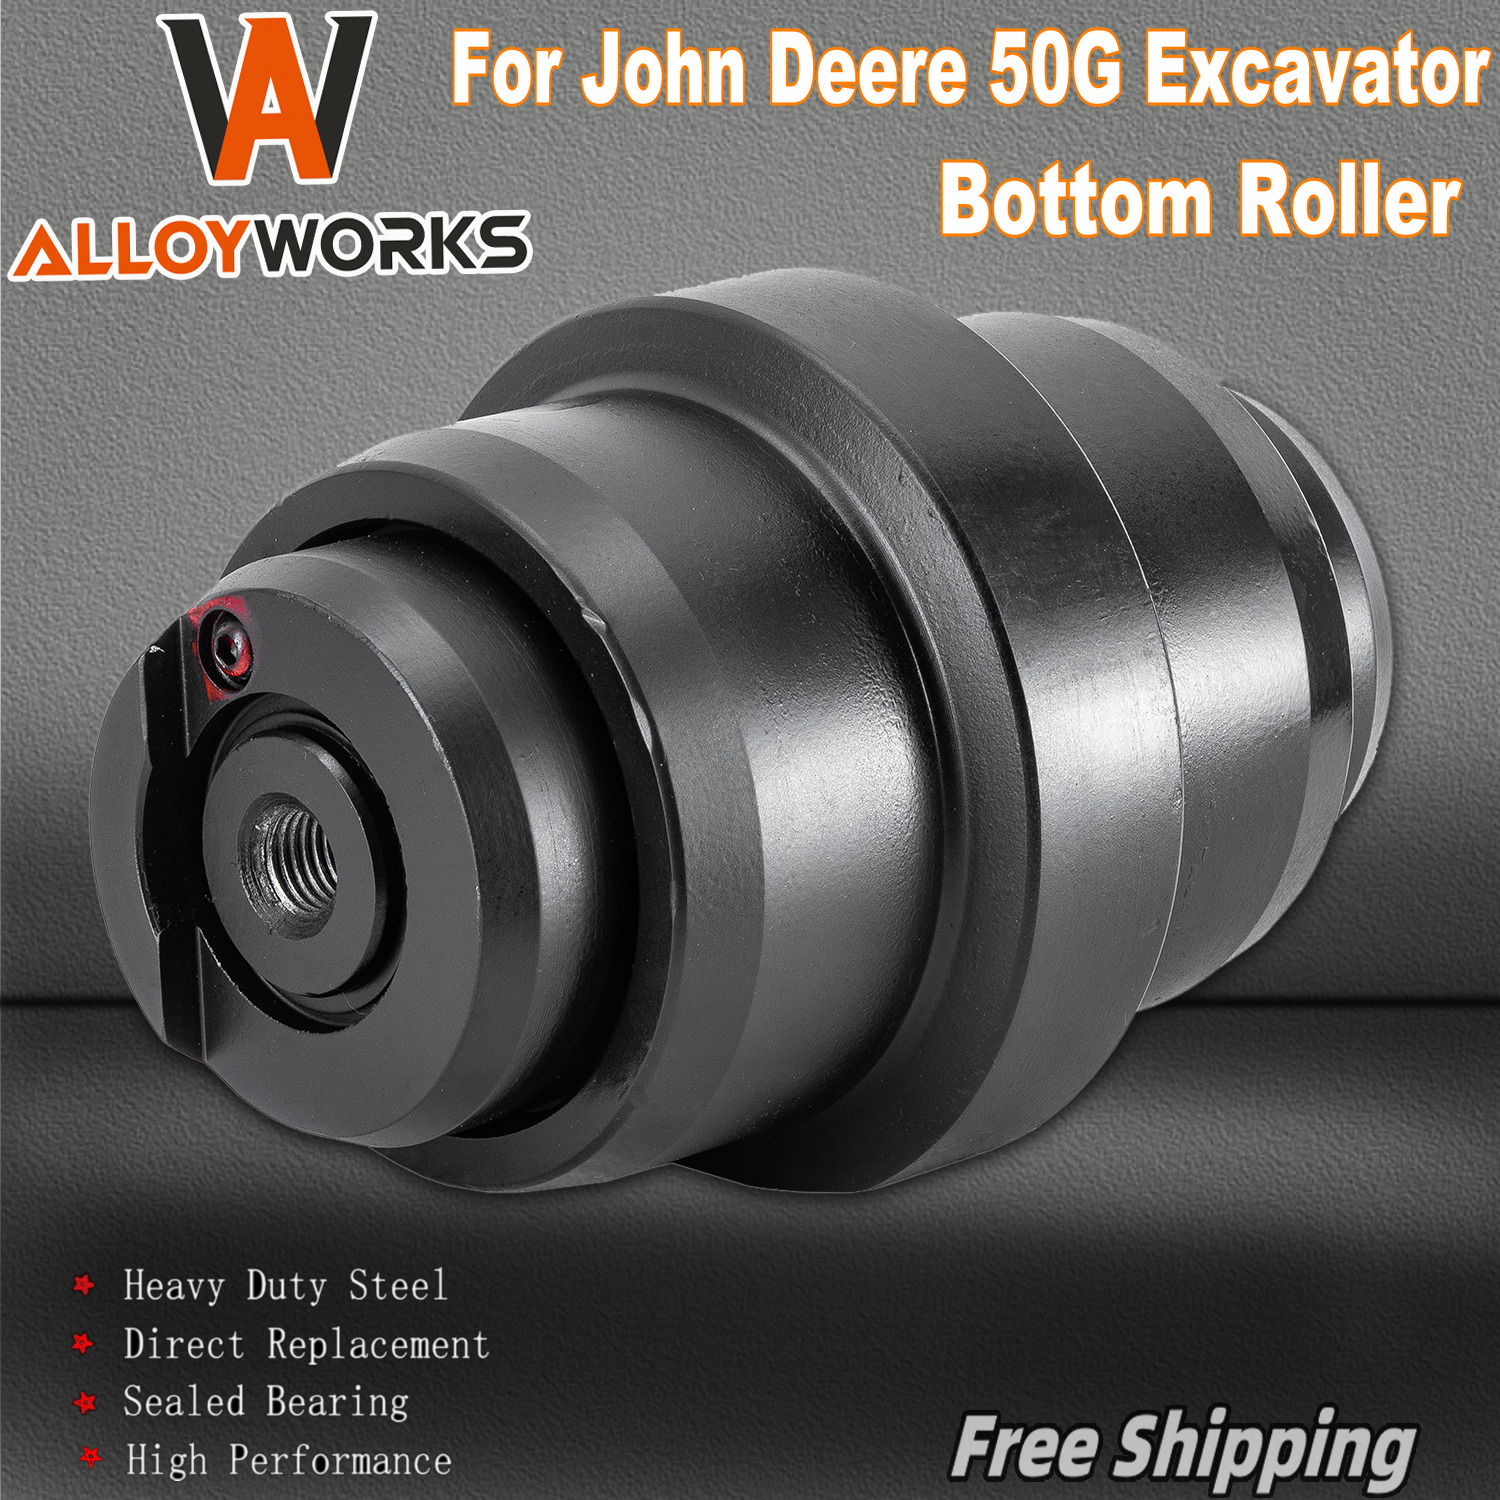 Bottom Roller fit John Deere 50G Excavator Undercarriage Heavy